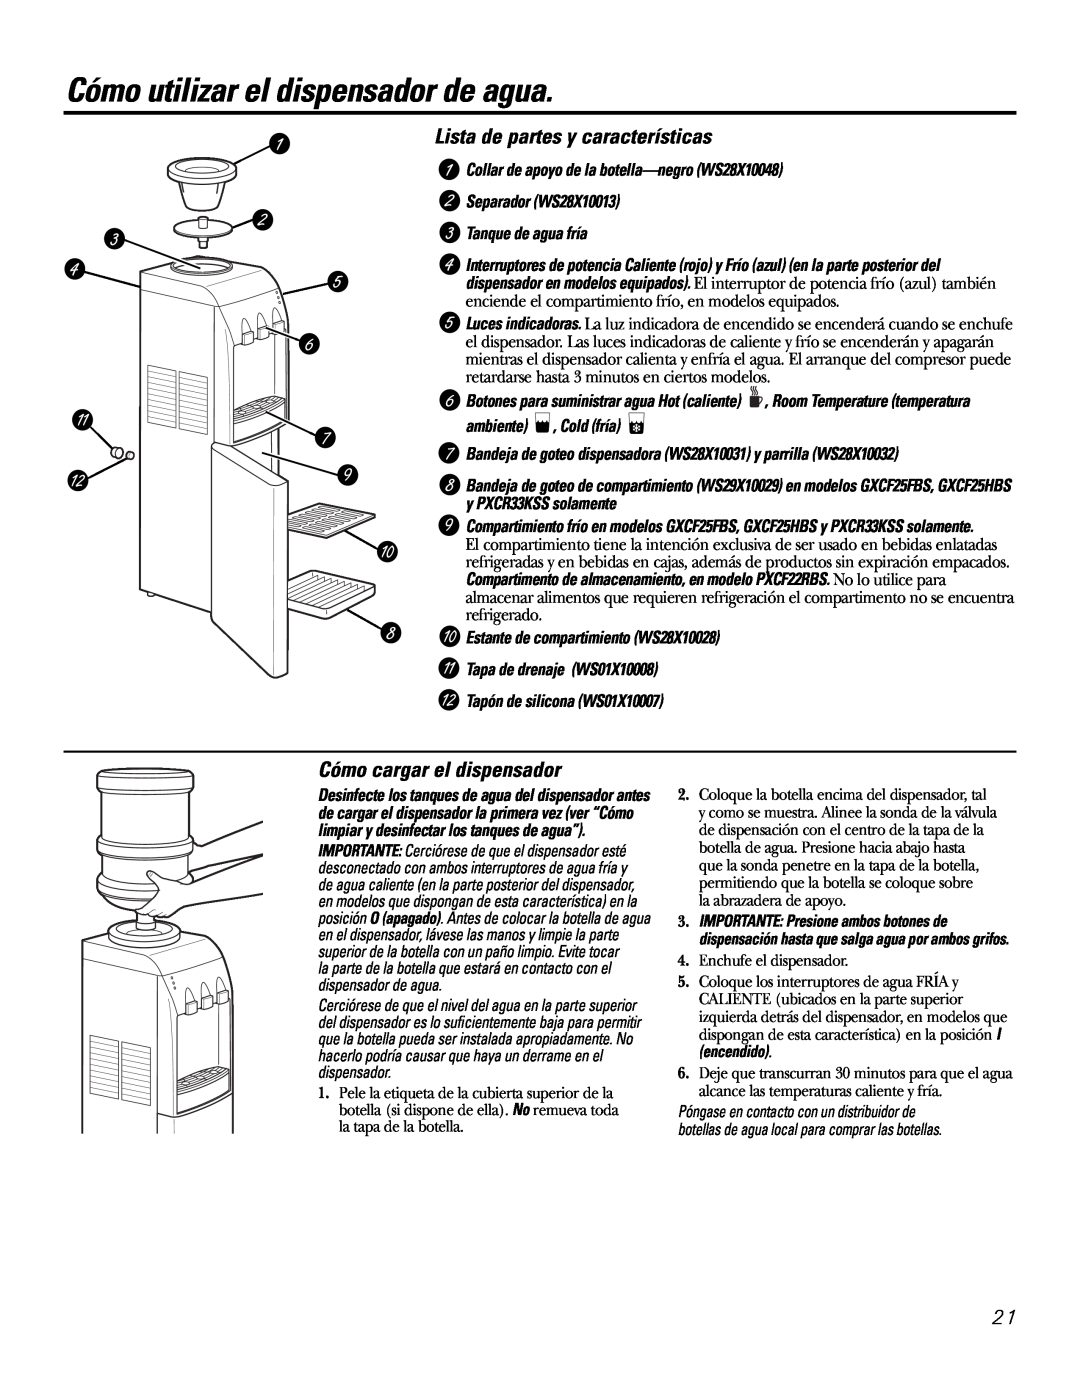 GE PXCF22RBS Cómo utilizar el dispensador de agua, Lista de partes y características, Cómo cargar el dispensador 